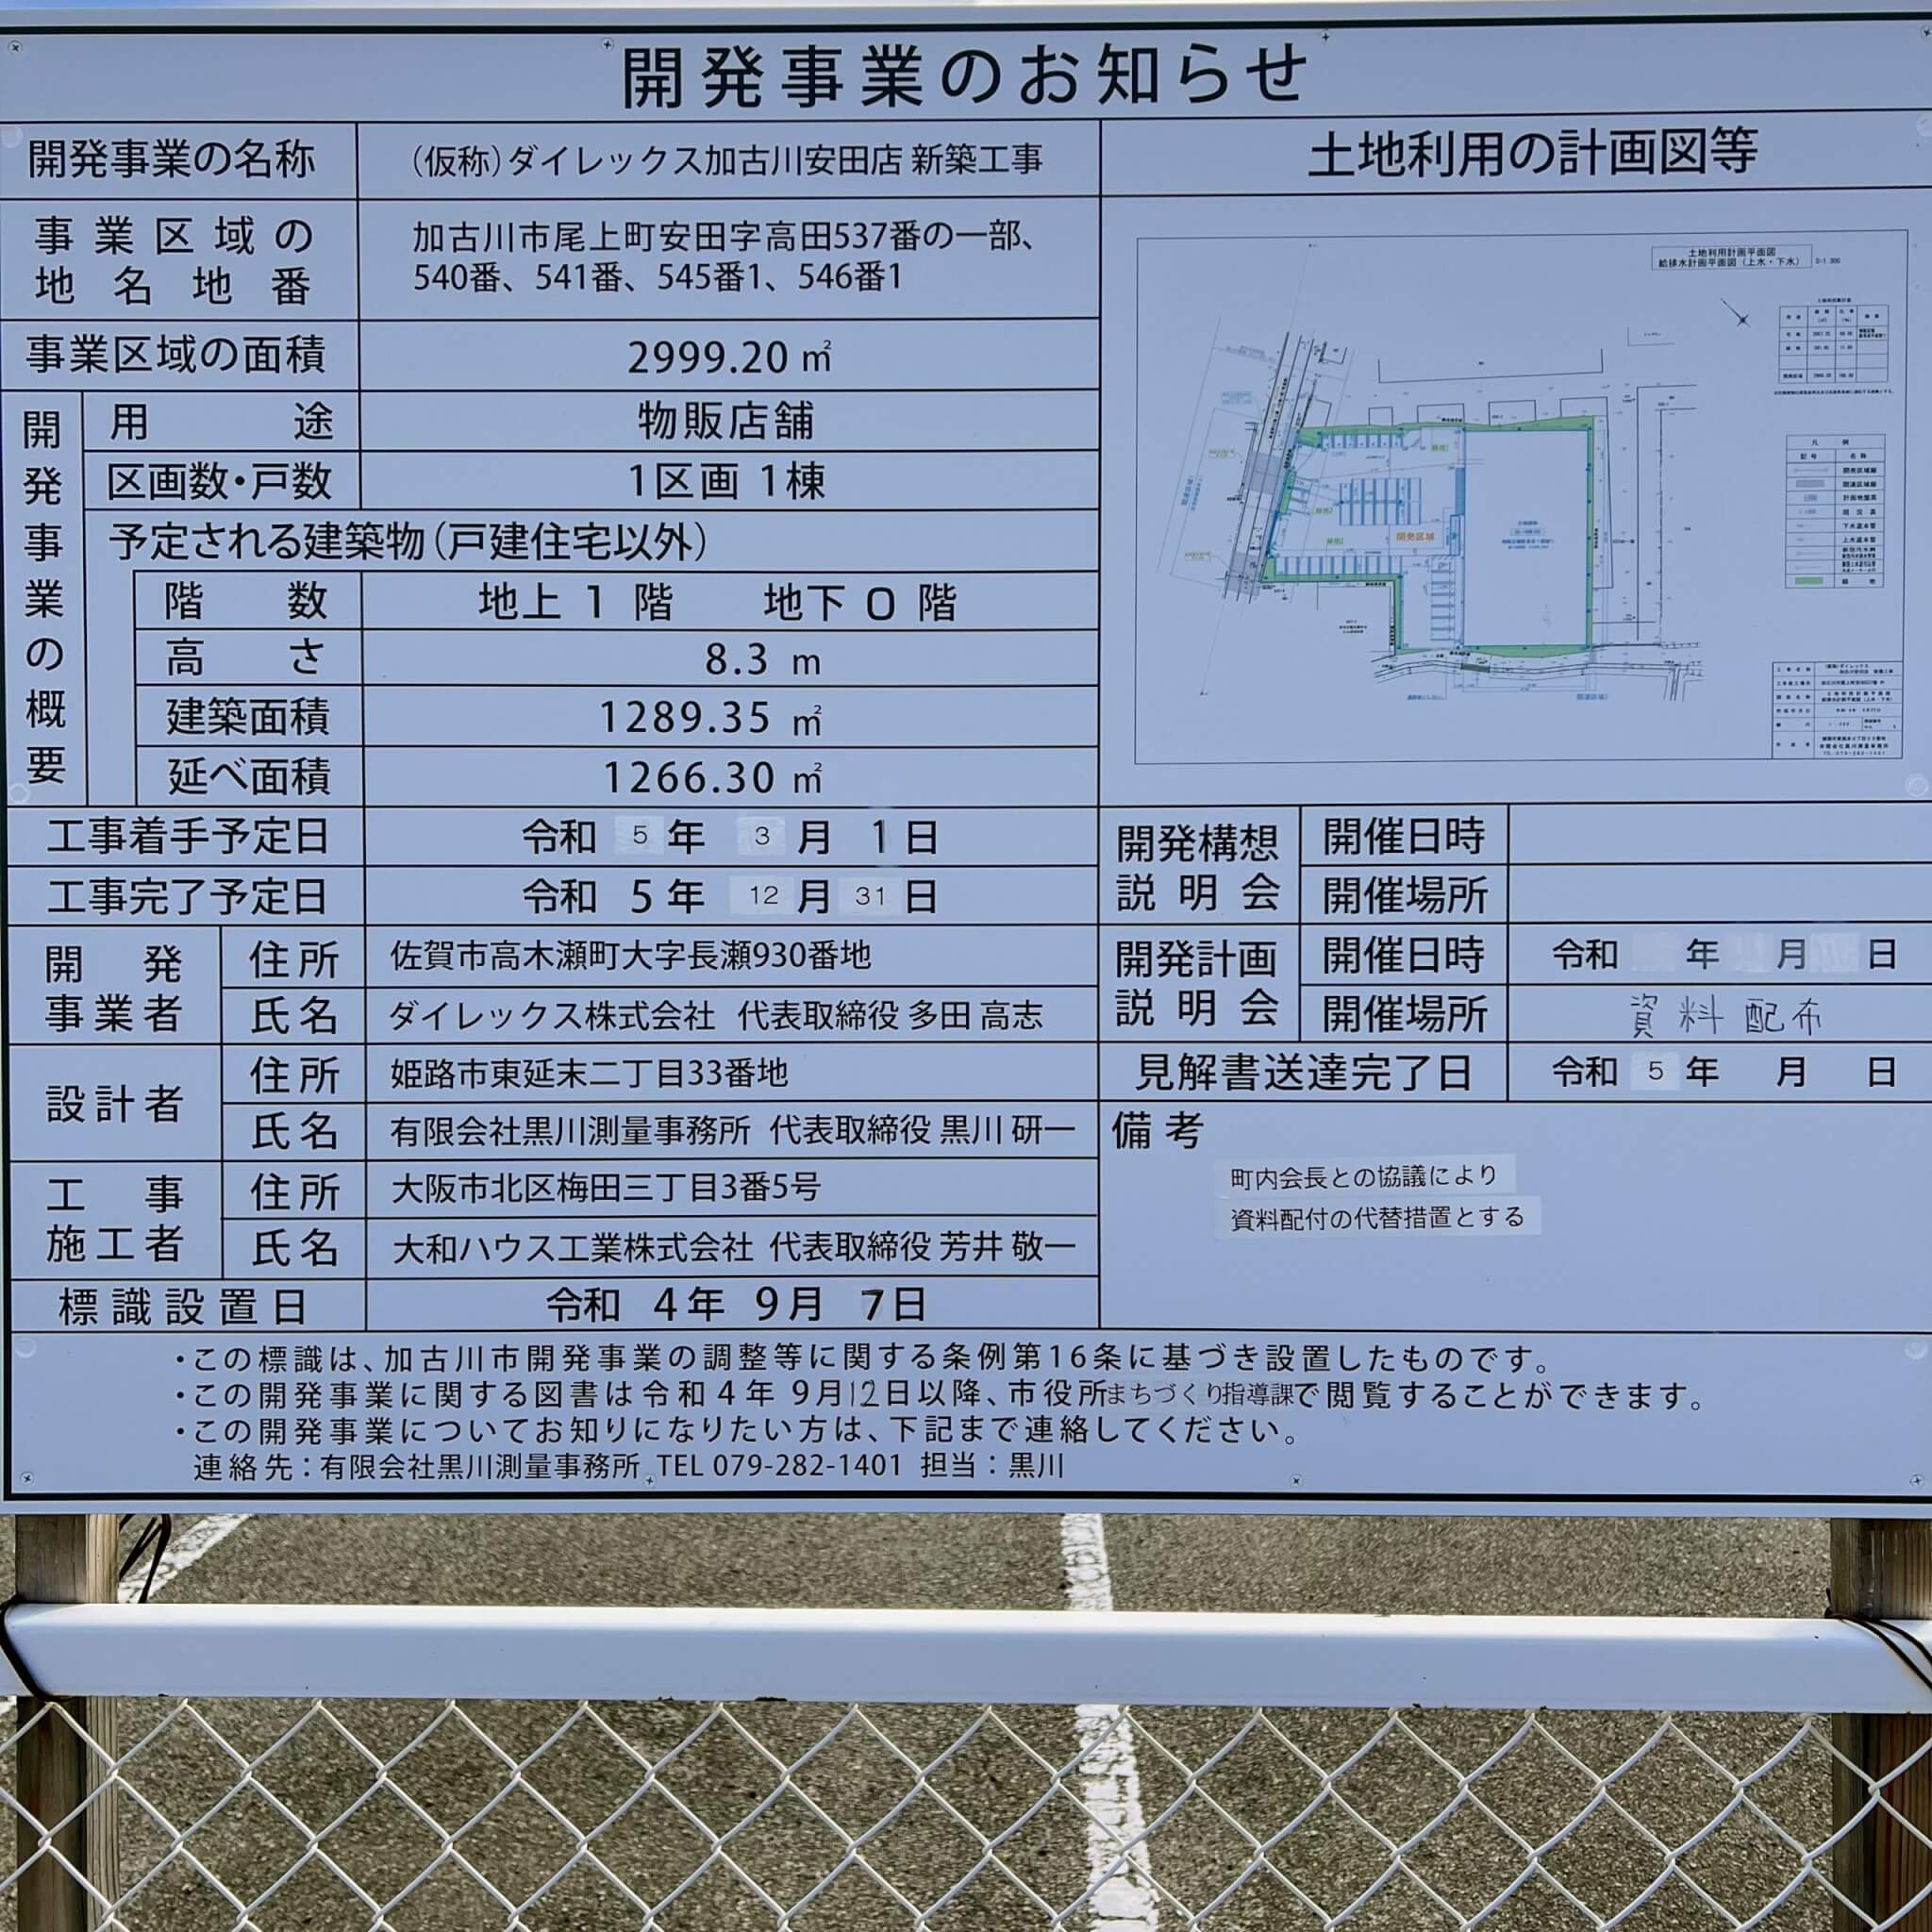 ダイレックス加古川安田店の開発事業のお知らせ看板